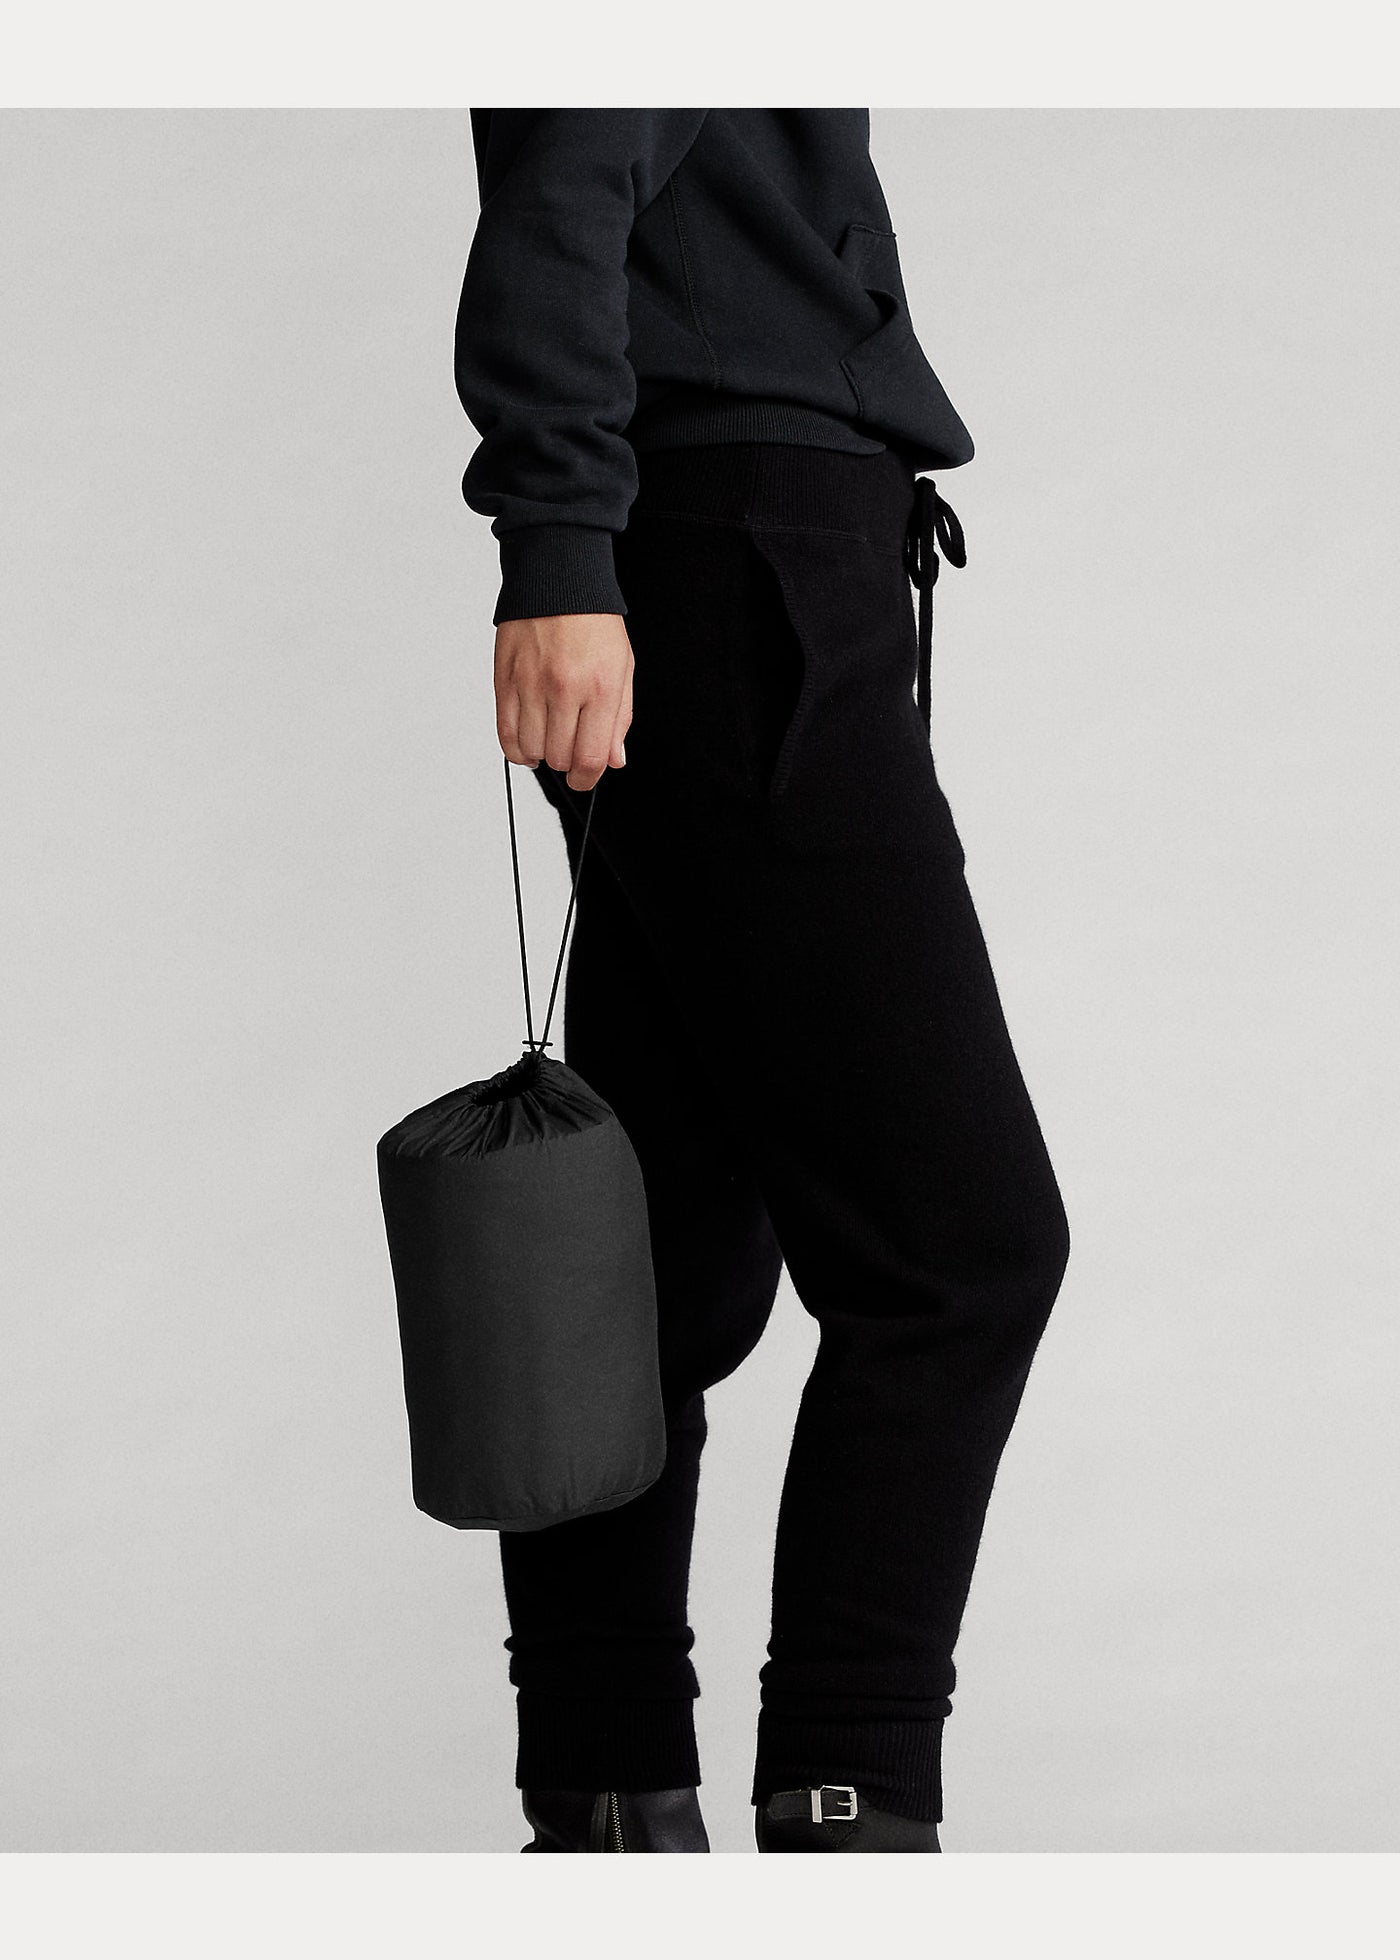 Ralph Lauren Packable Jacket | Black